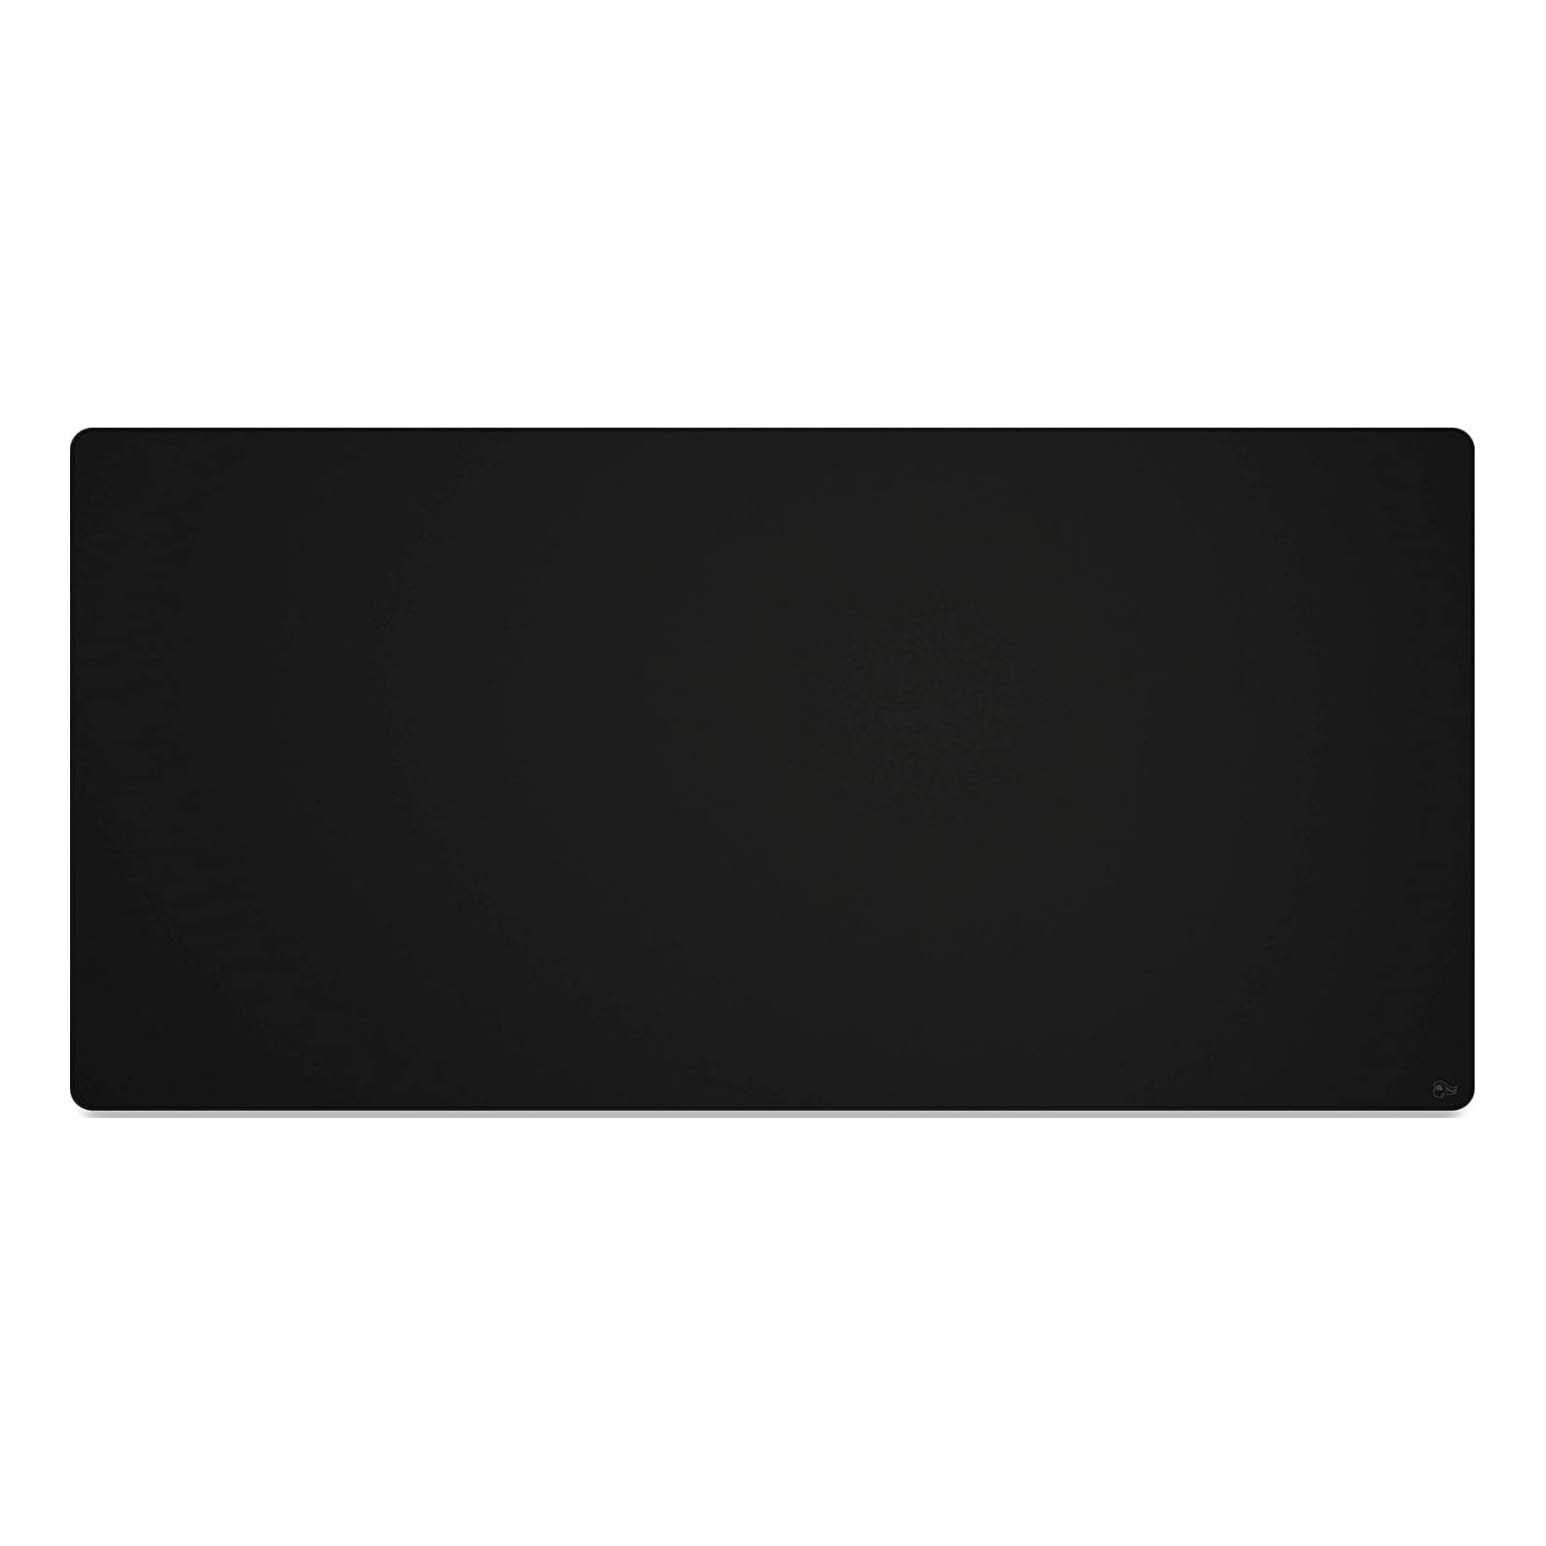 Игровой коврик для мыши Glorious 3XL Stealth Edition Extended, черный игровой коврик для мыши corsair gaming mm300 extended черный